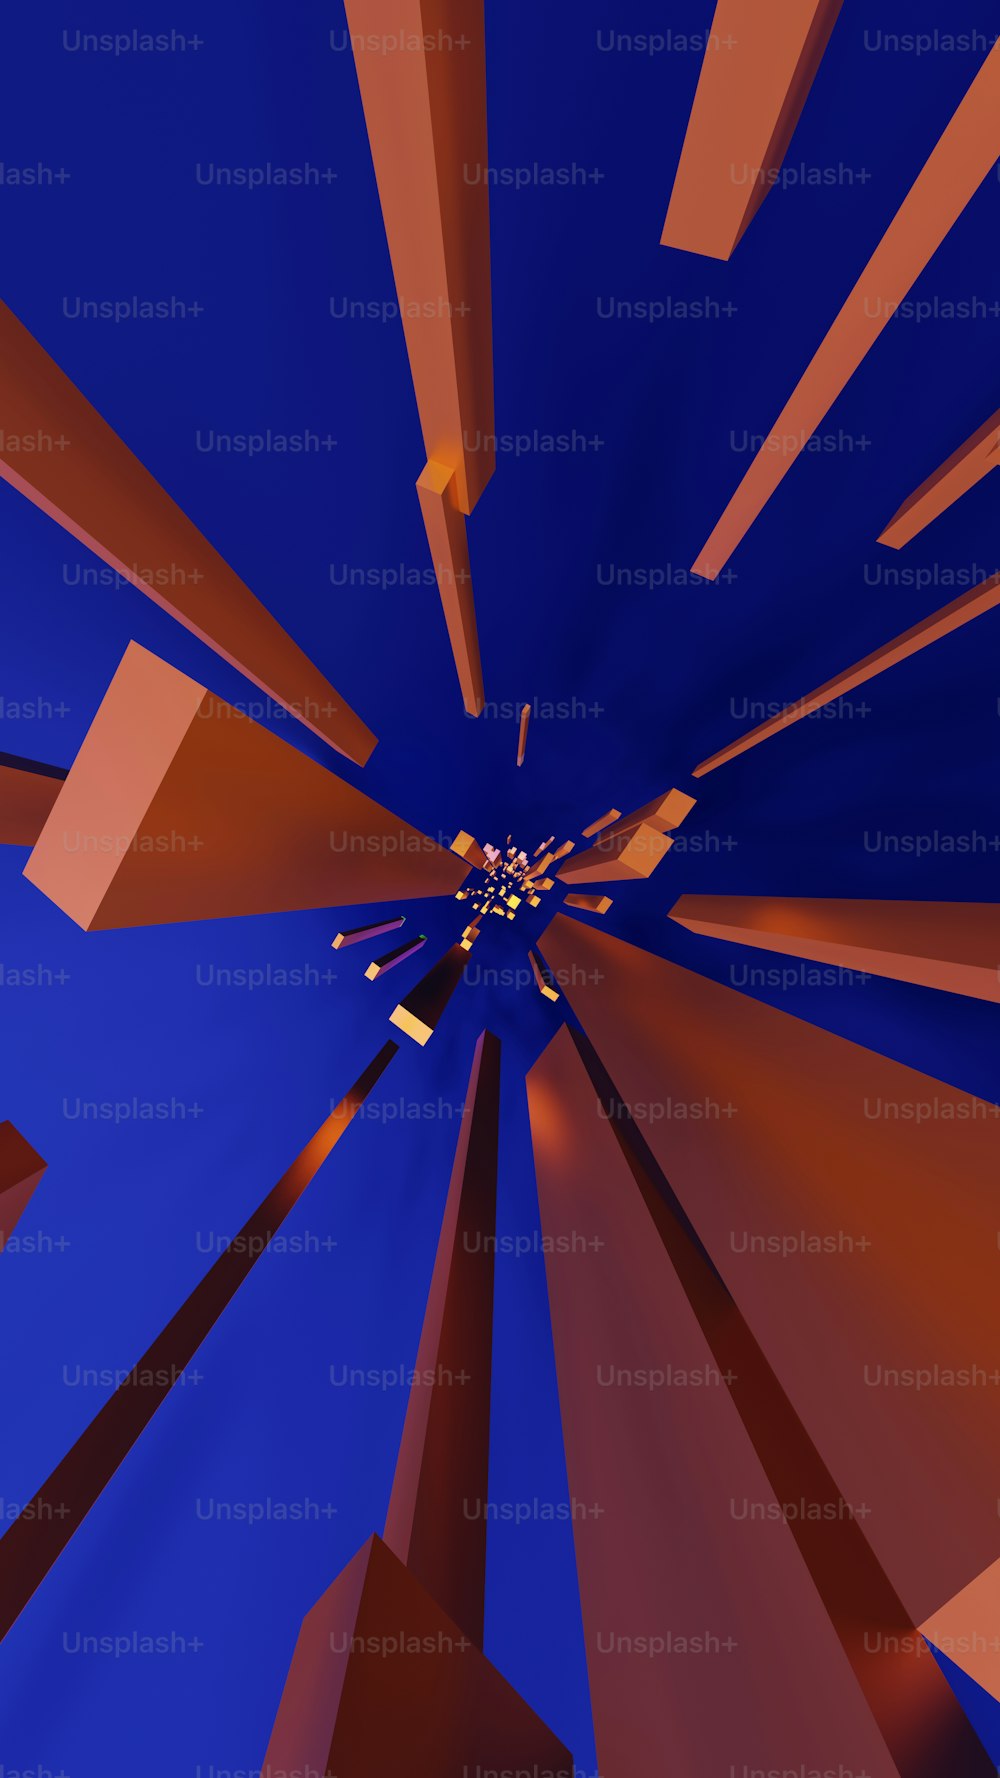 Una imagen generada por computadora de un objeto azul y naranja